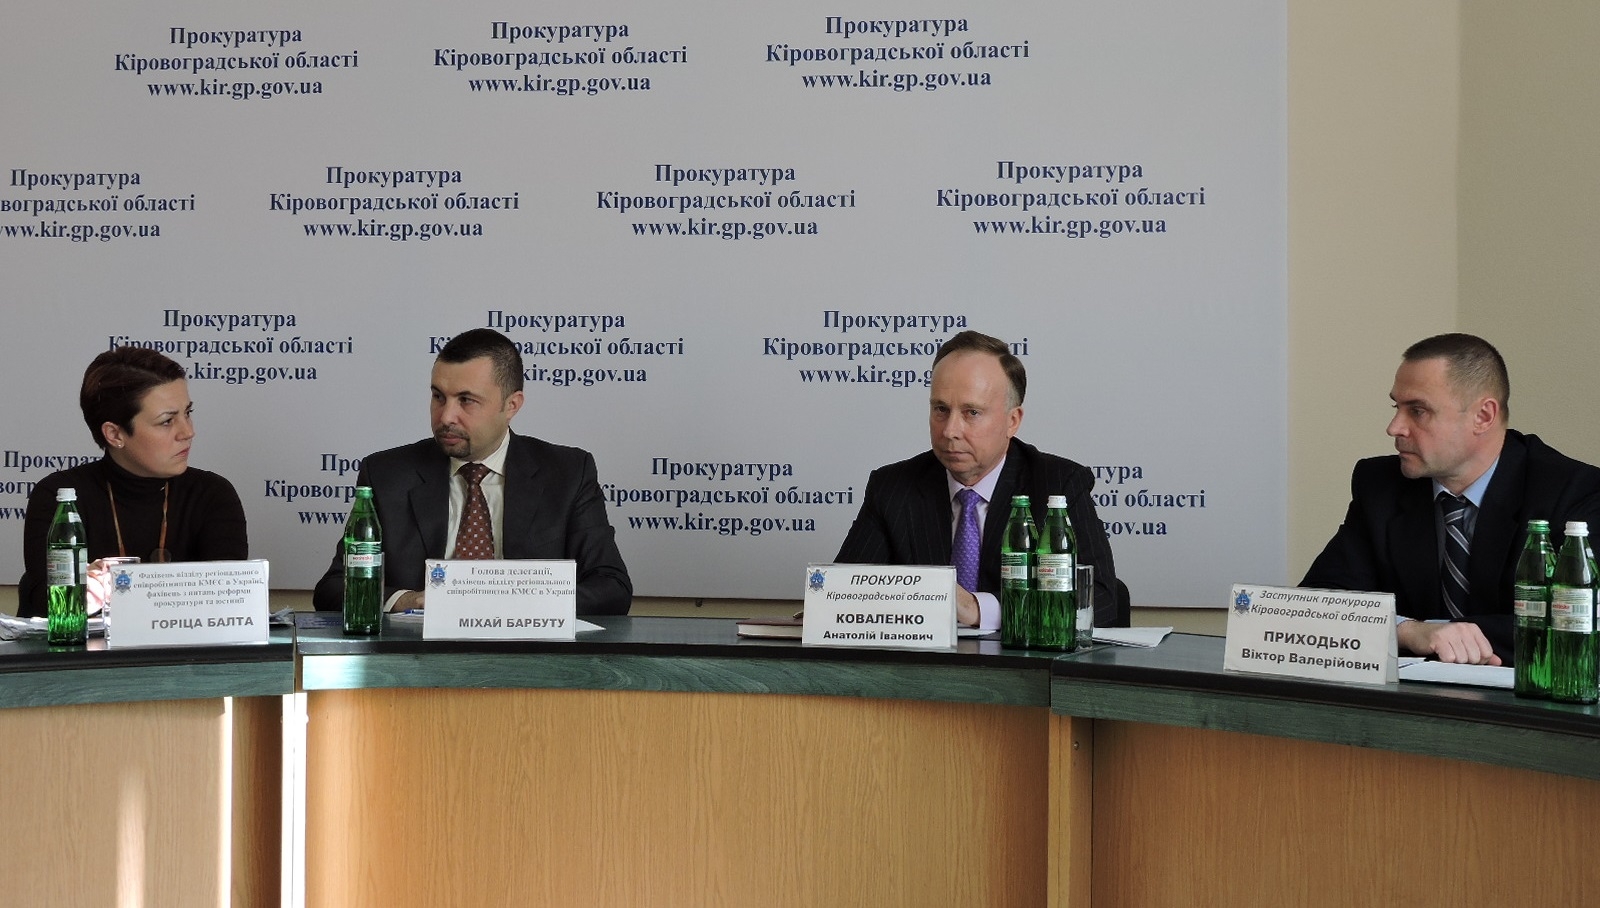 Прокурор області обговорив проблеми реформування прокуратури з представниками Консультативної місії ЄС в Україні 